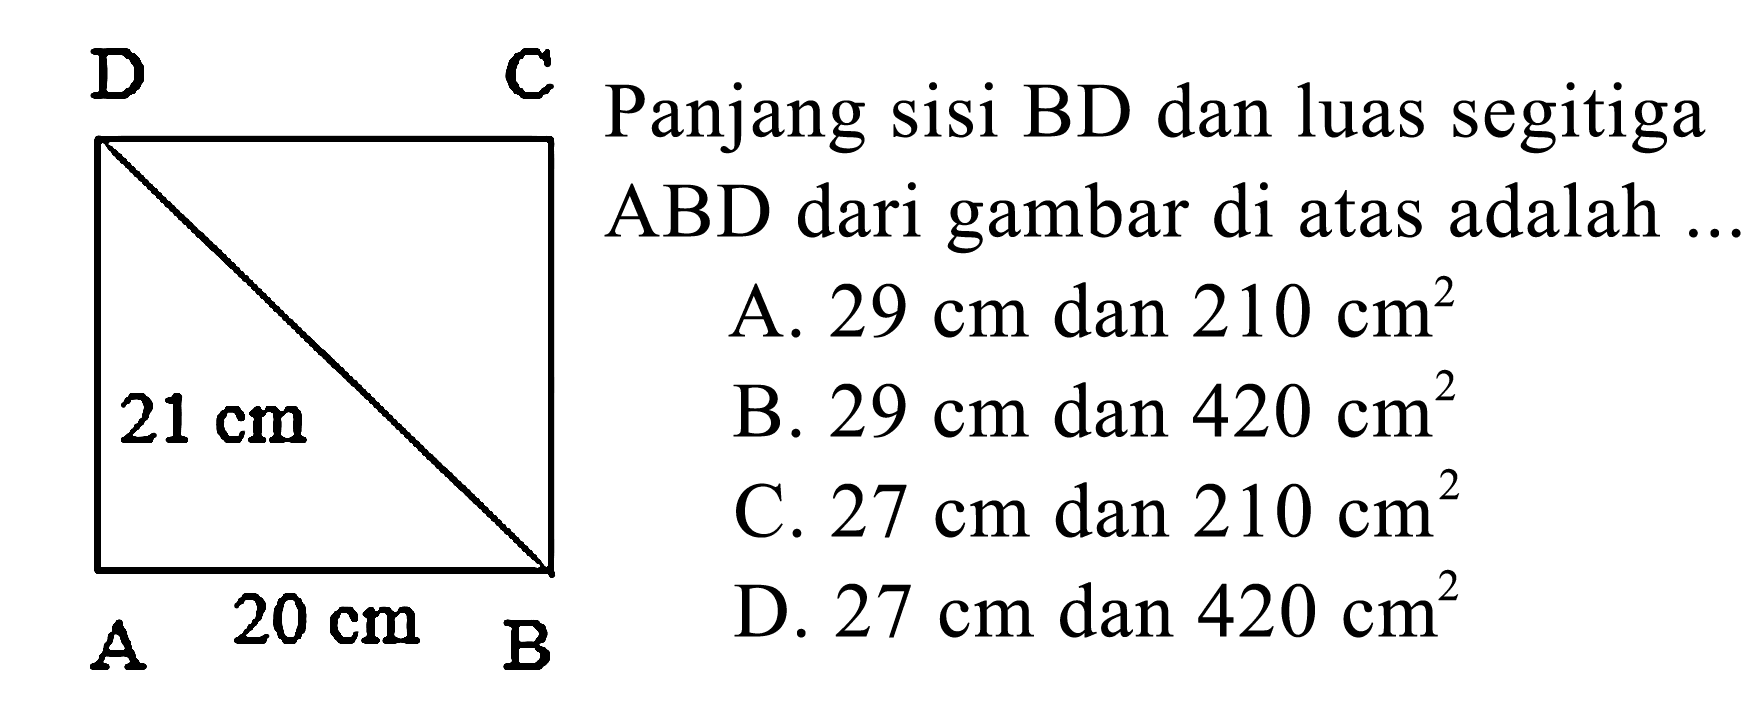 Panjang sisi BD dan luas segitiga ABD dari gambar di atas adalah ... A 20 cm B 21 cm C D A. 29 cm dan 210 cm^2 B. 29 cm dan 420 cm^2 C. 27 cm dan 210 cm^2 D. 27 cm dan 420 cm^2